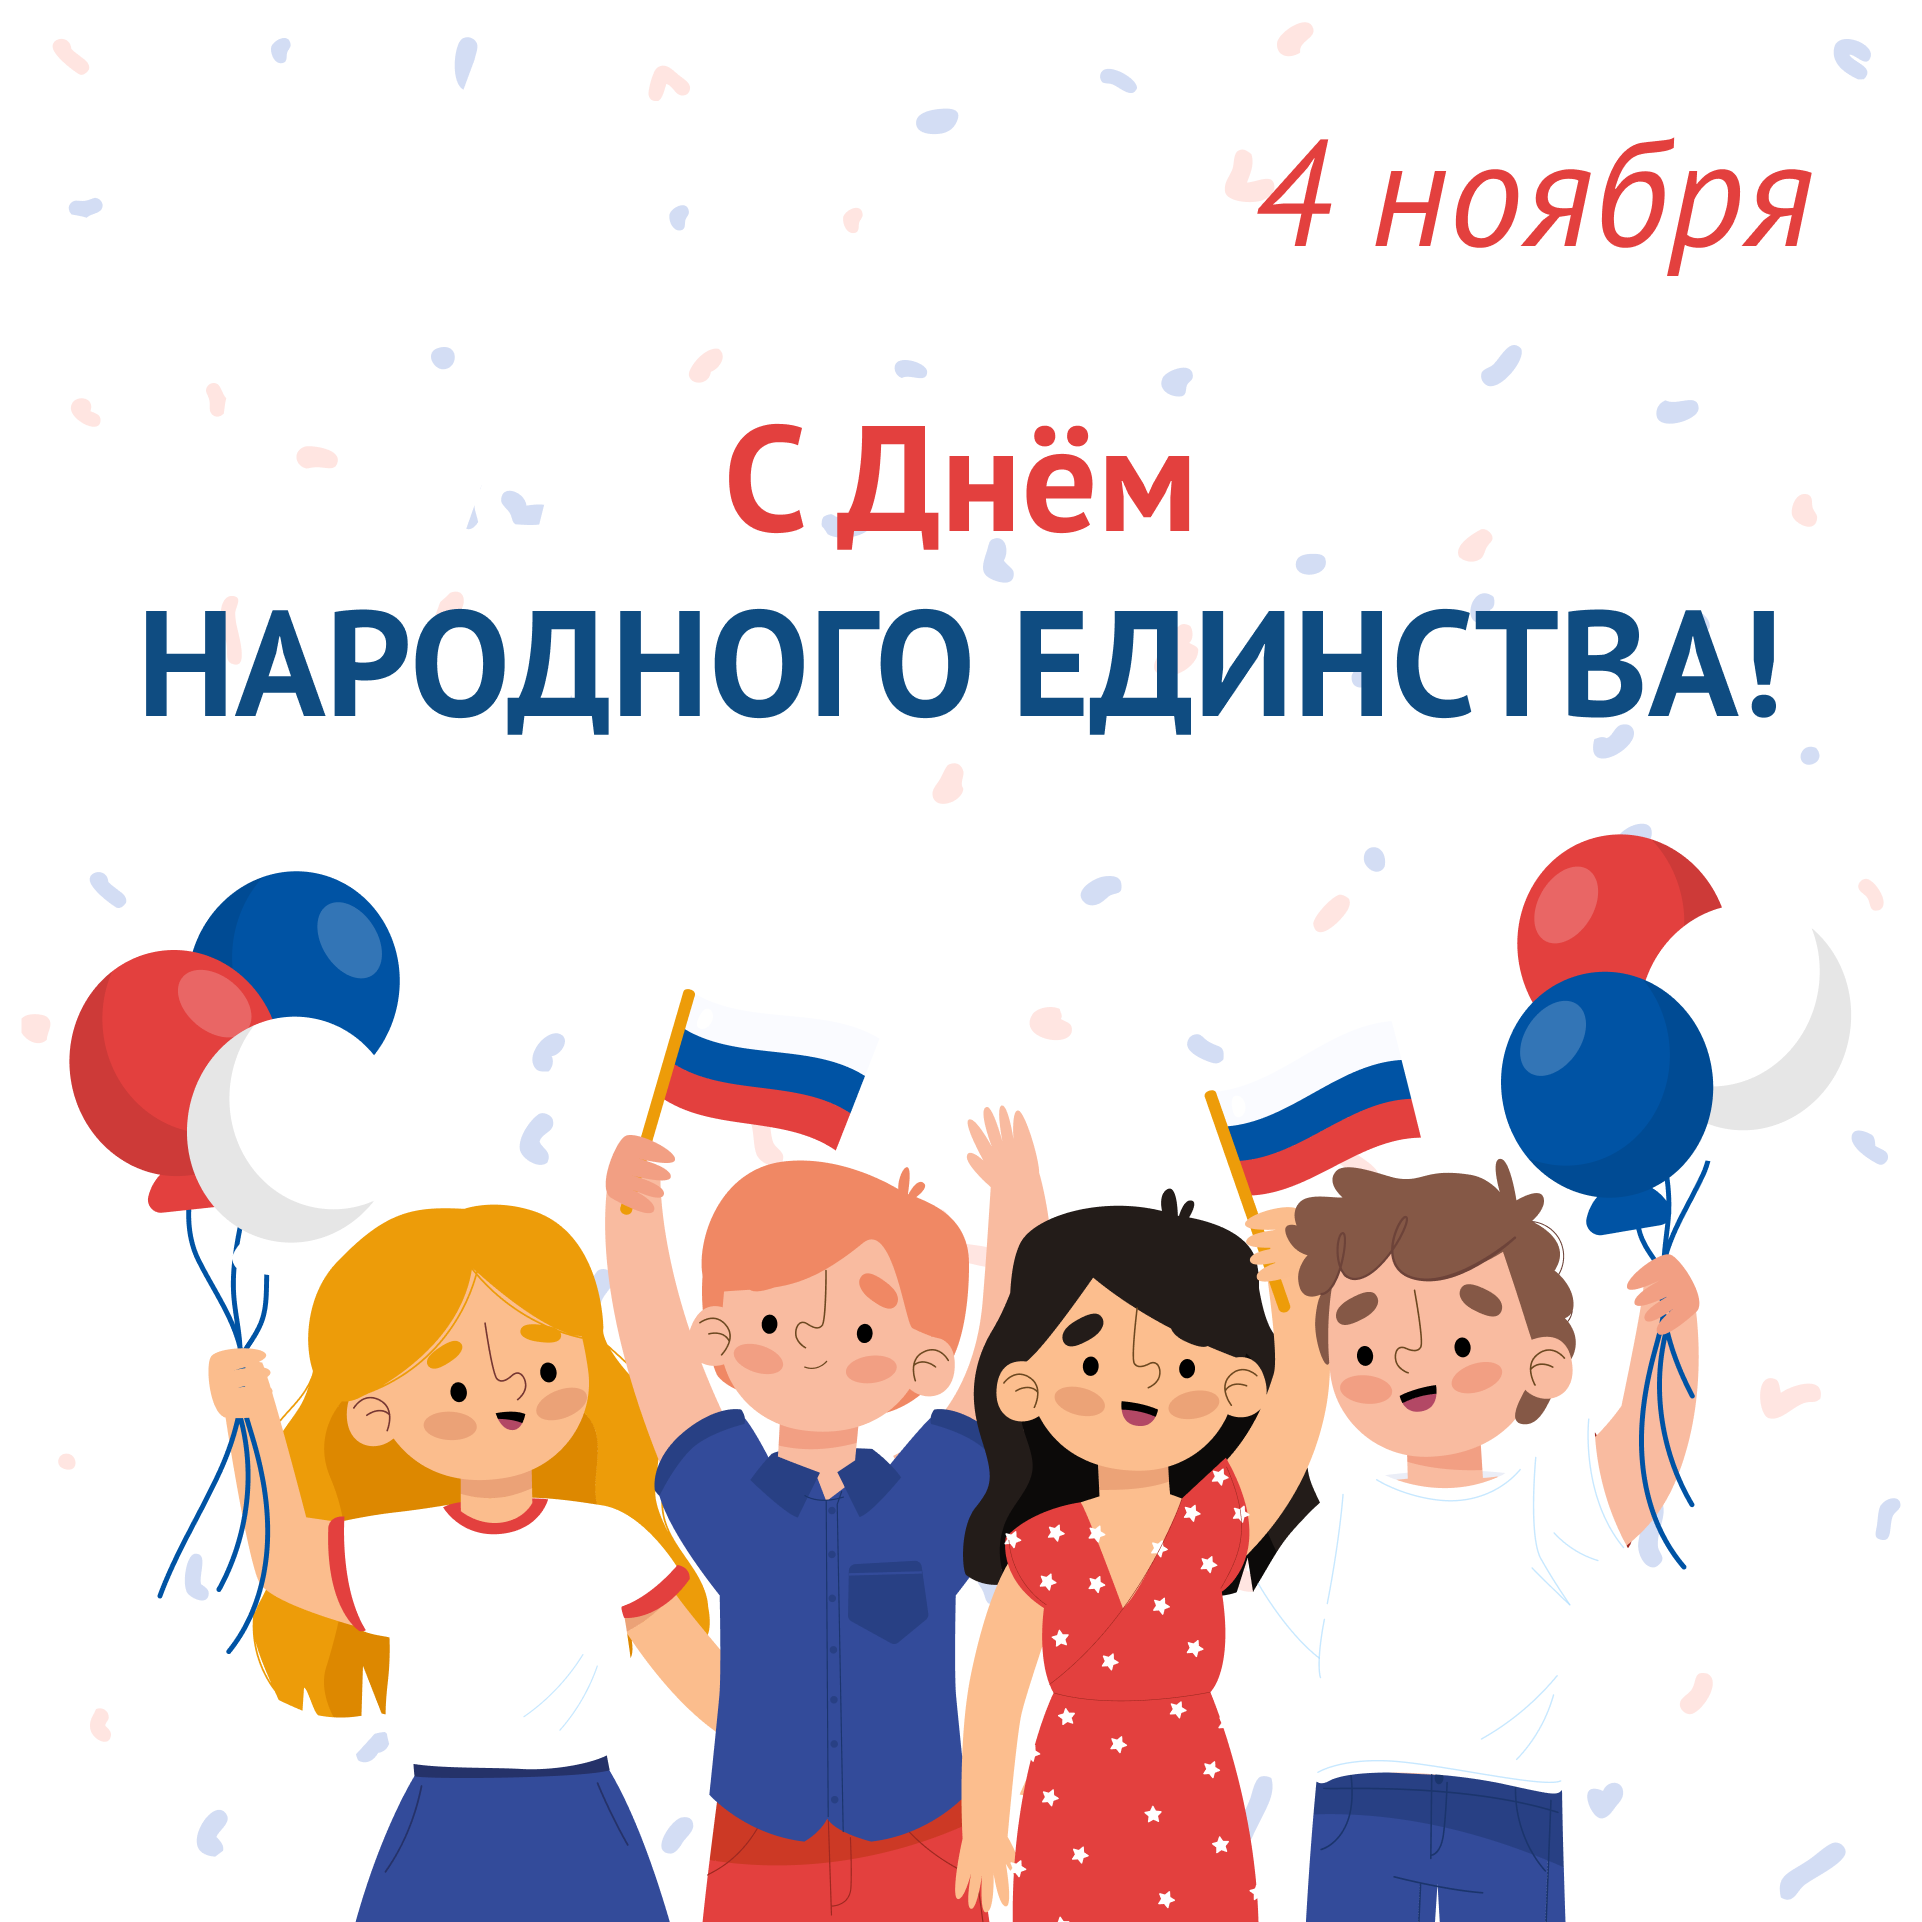 4 ноября вся Россия отмечает День народного единства.